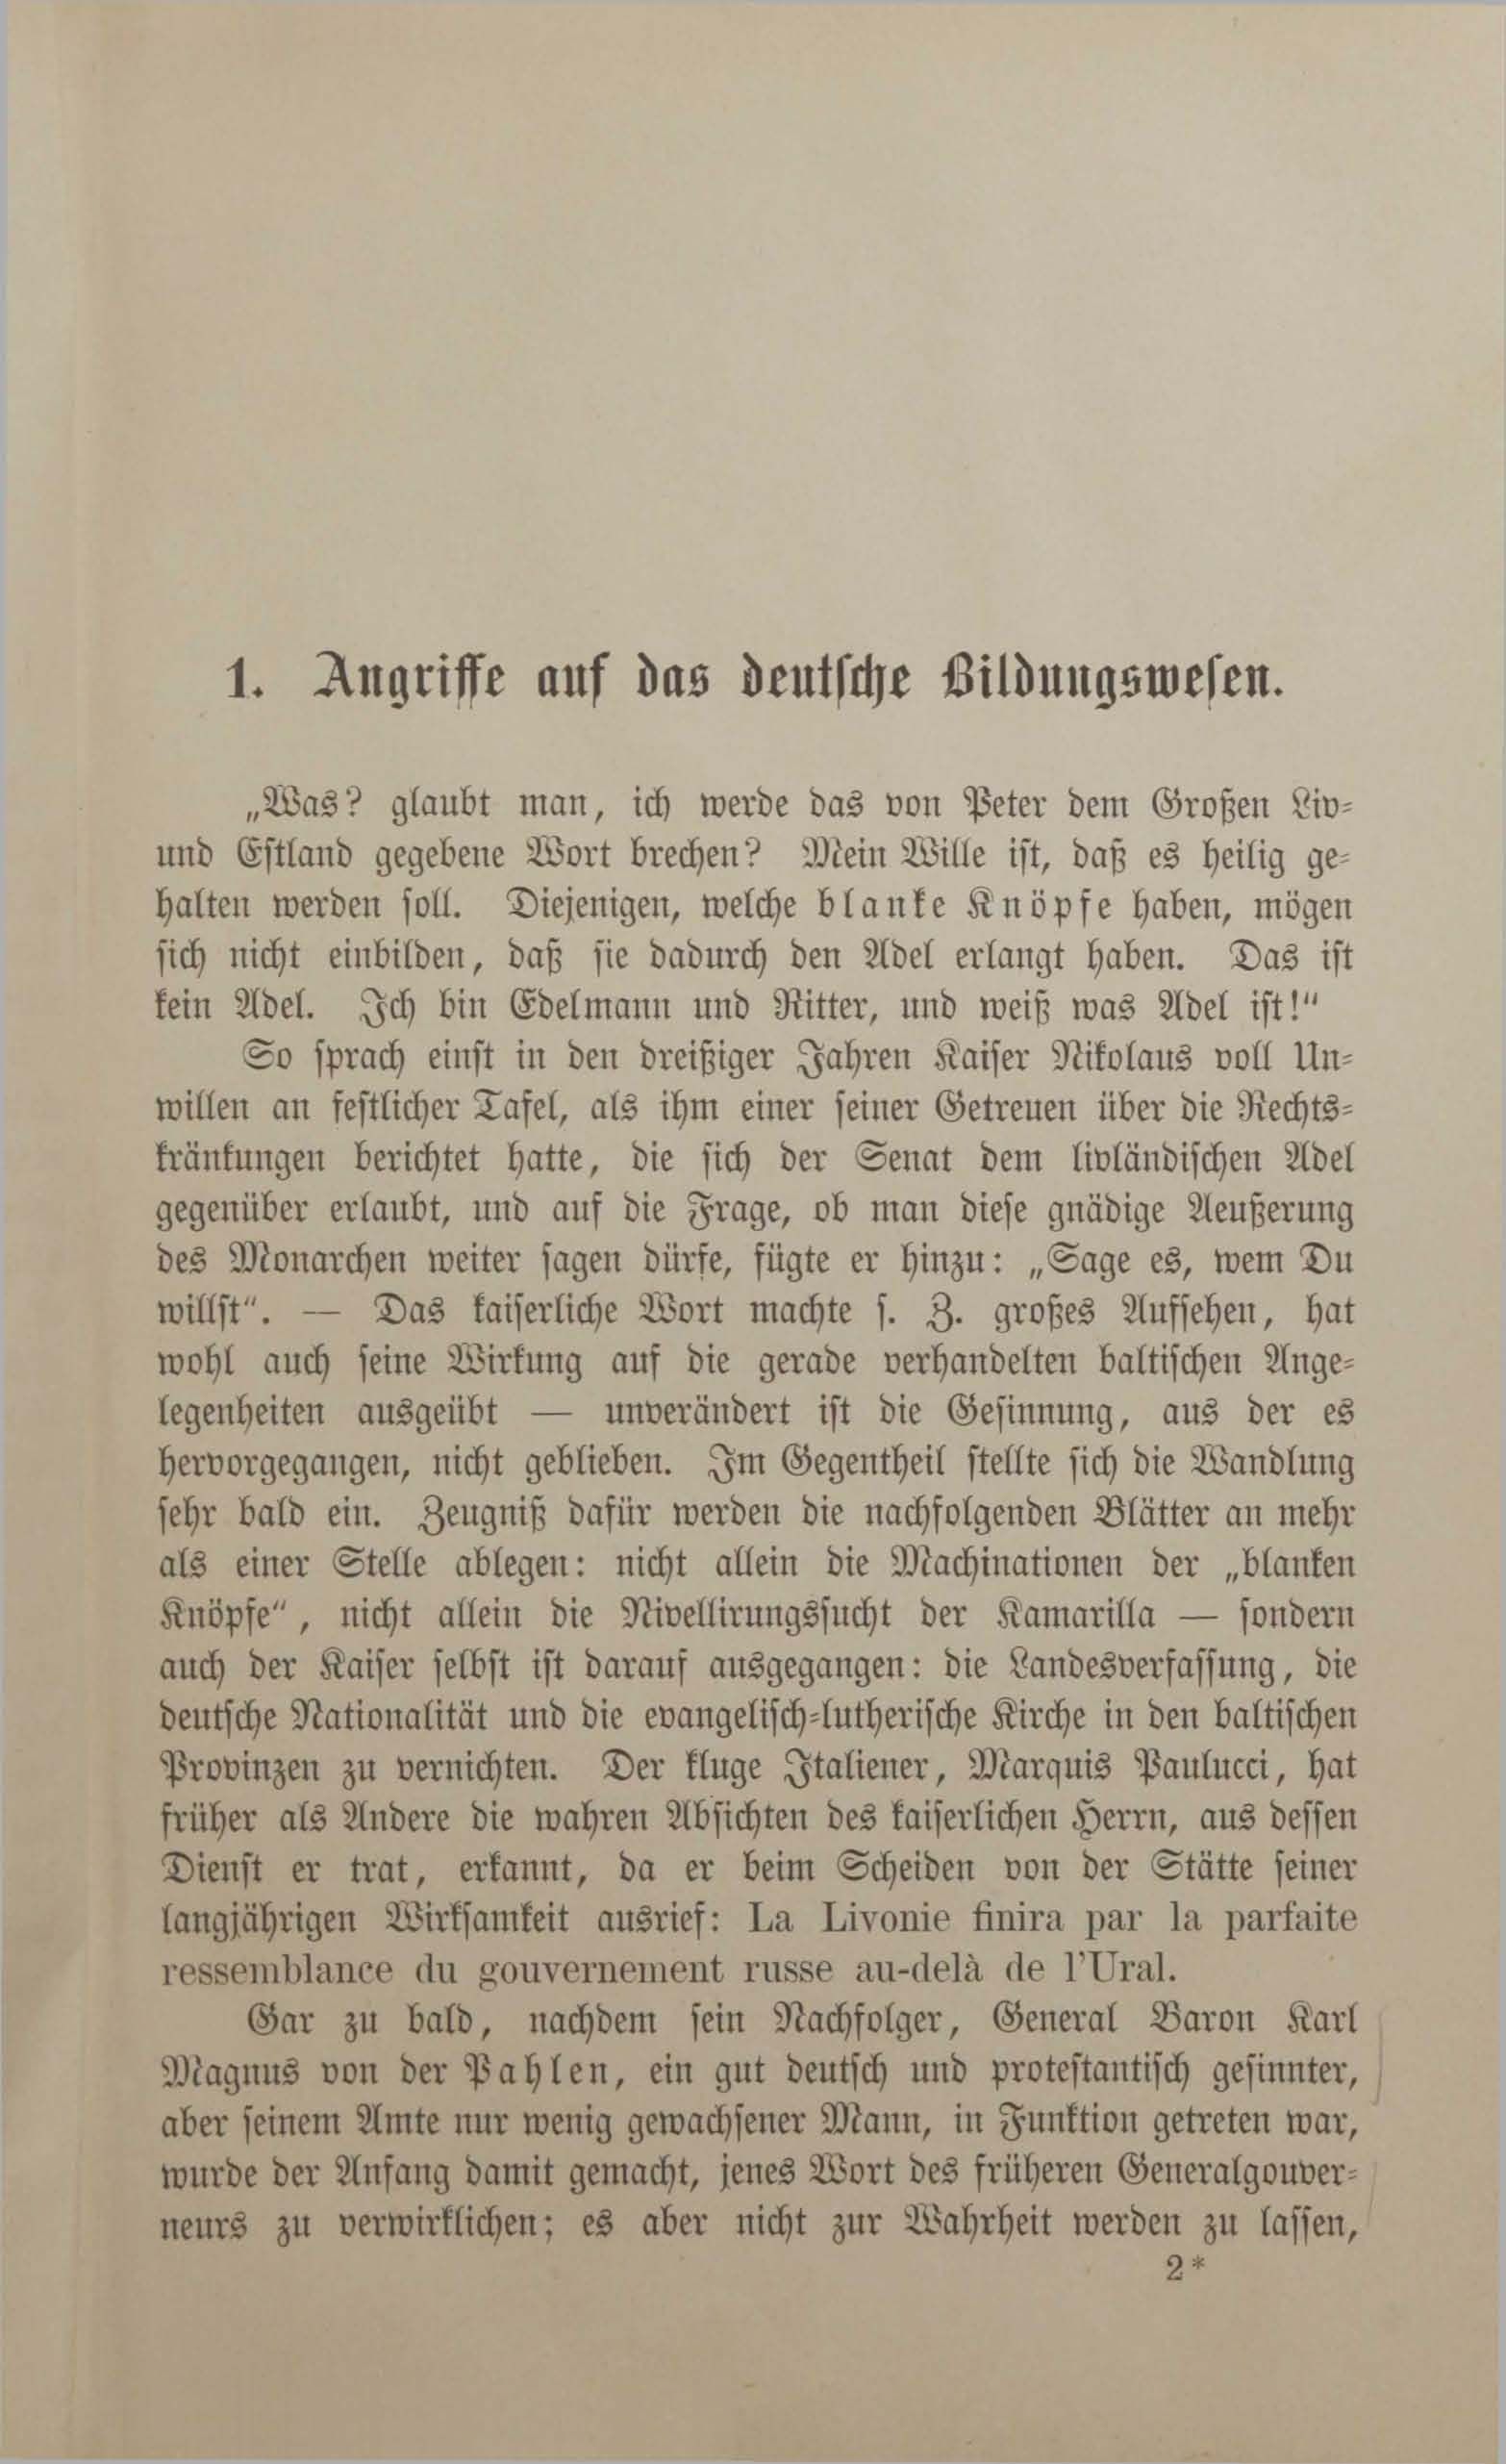 Fünfzig Jahre Russischer Verwaltung in den Baltischen Provinzen (1883) | 22. (19) Main body of text